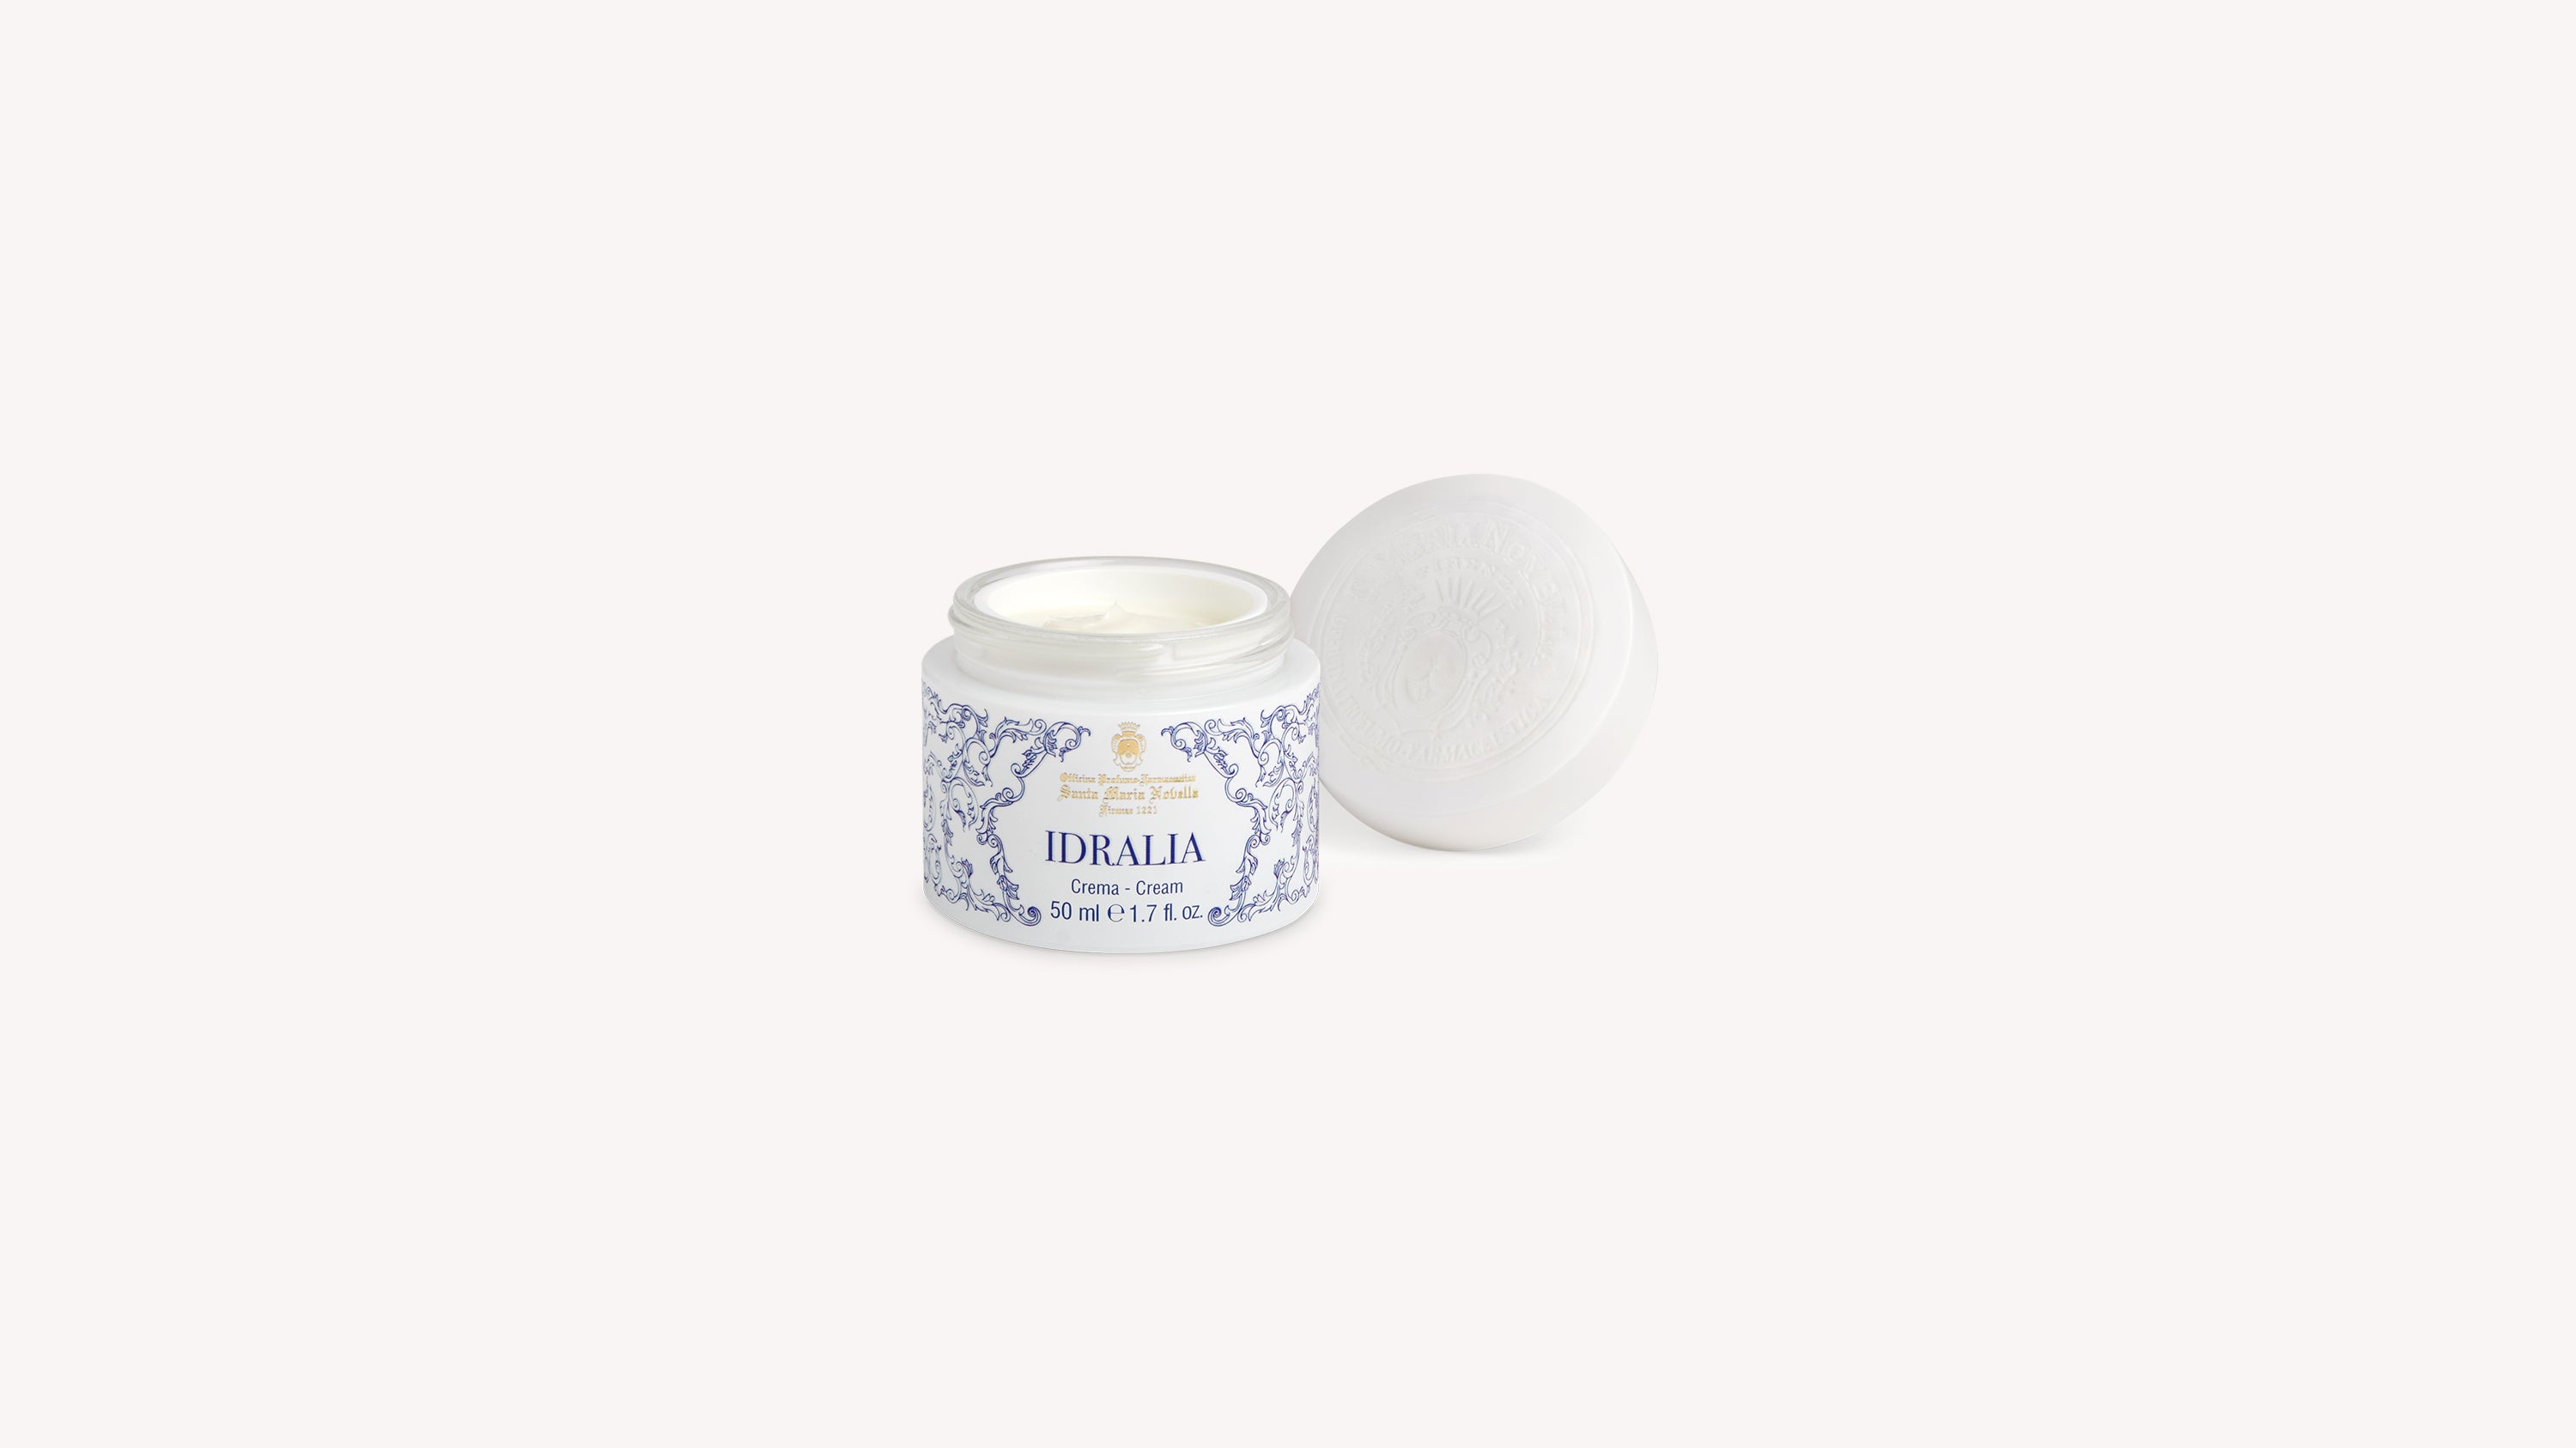 Idralia Face Cream Skin Care officina-smn-usa-ca.myshopify.com Officina Profumo Farmaceutica di Santa Maria Novella - US